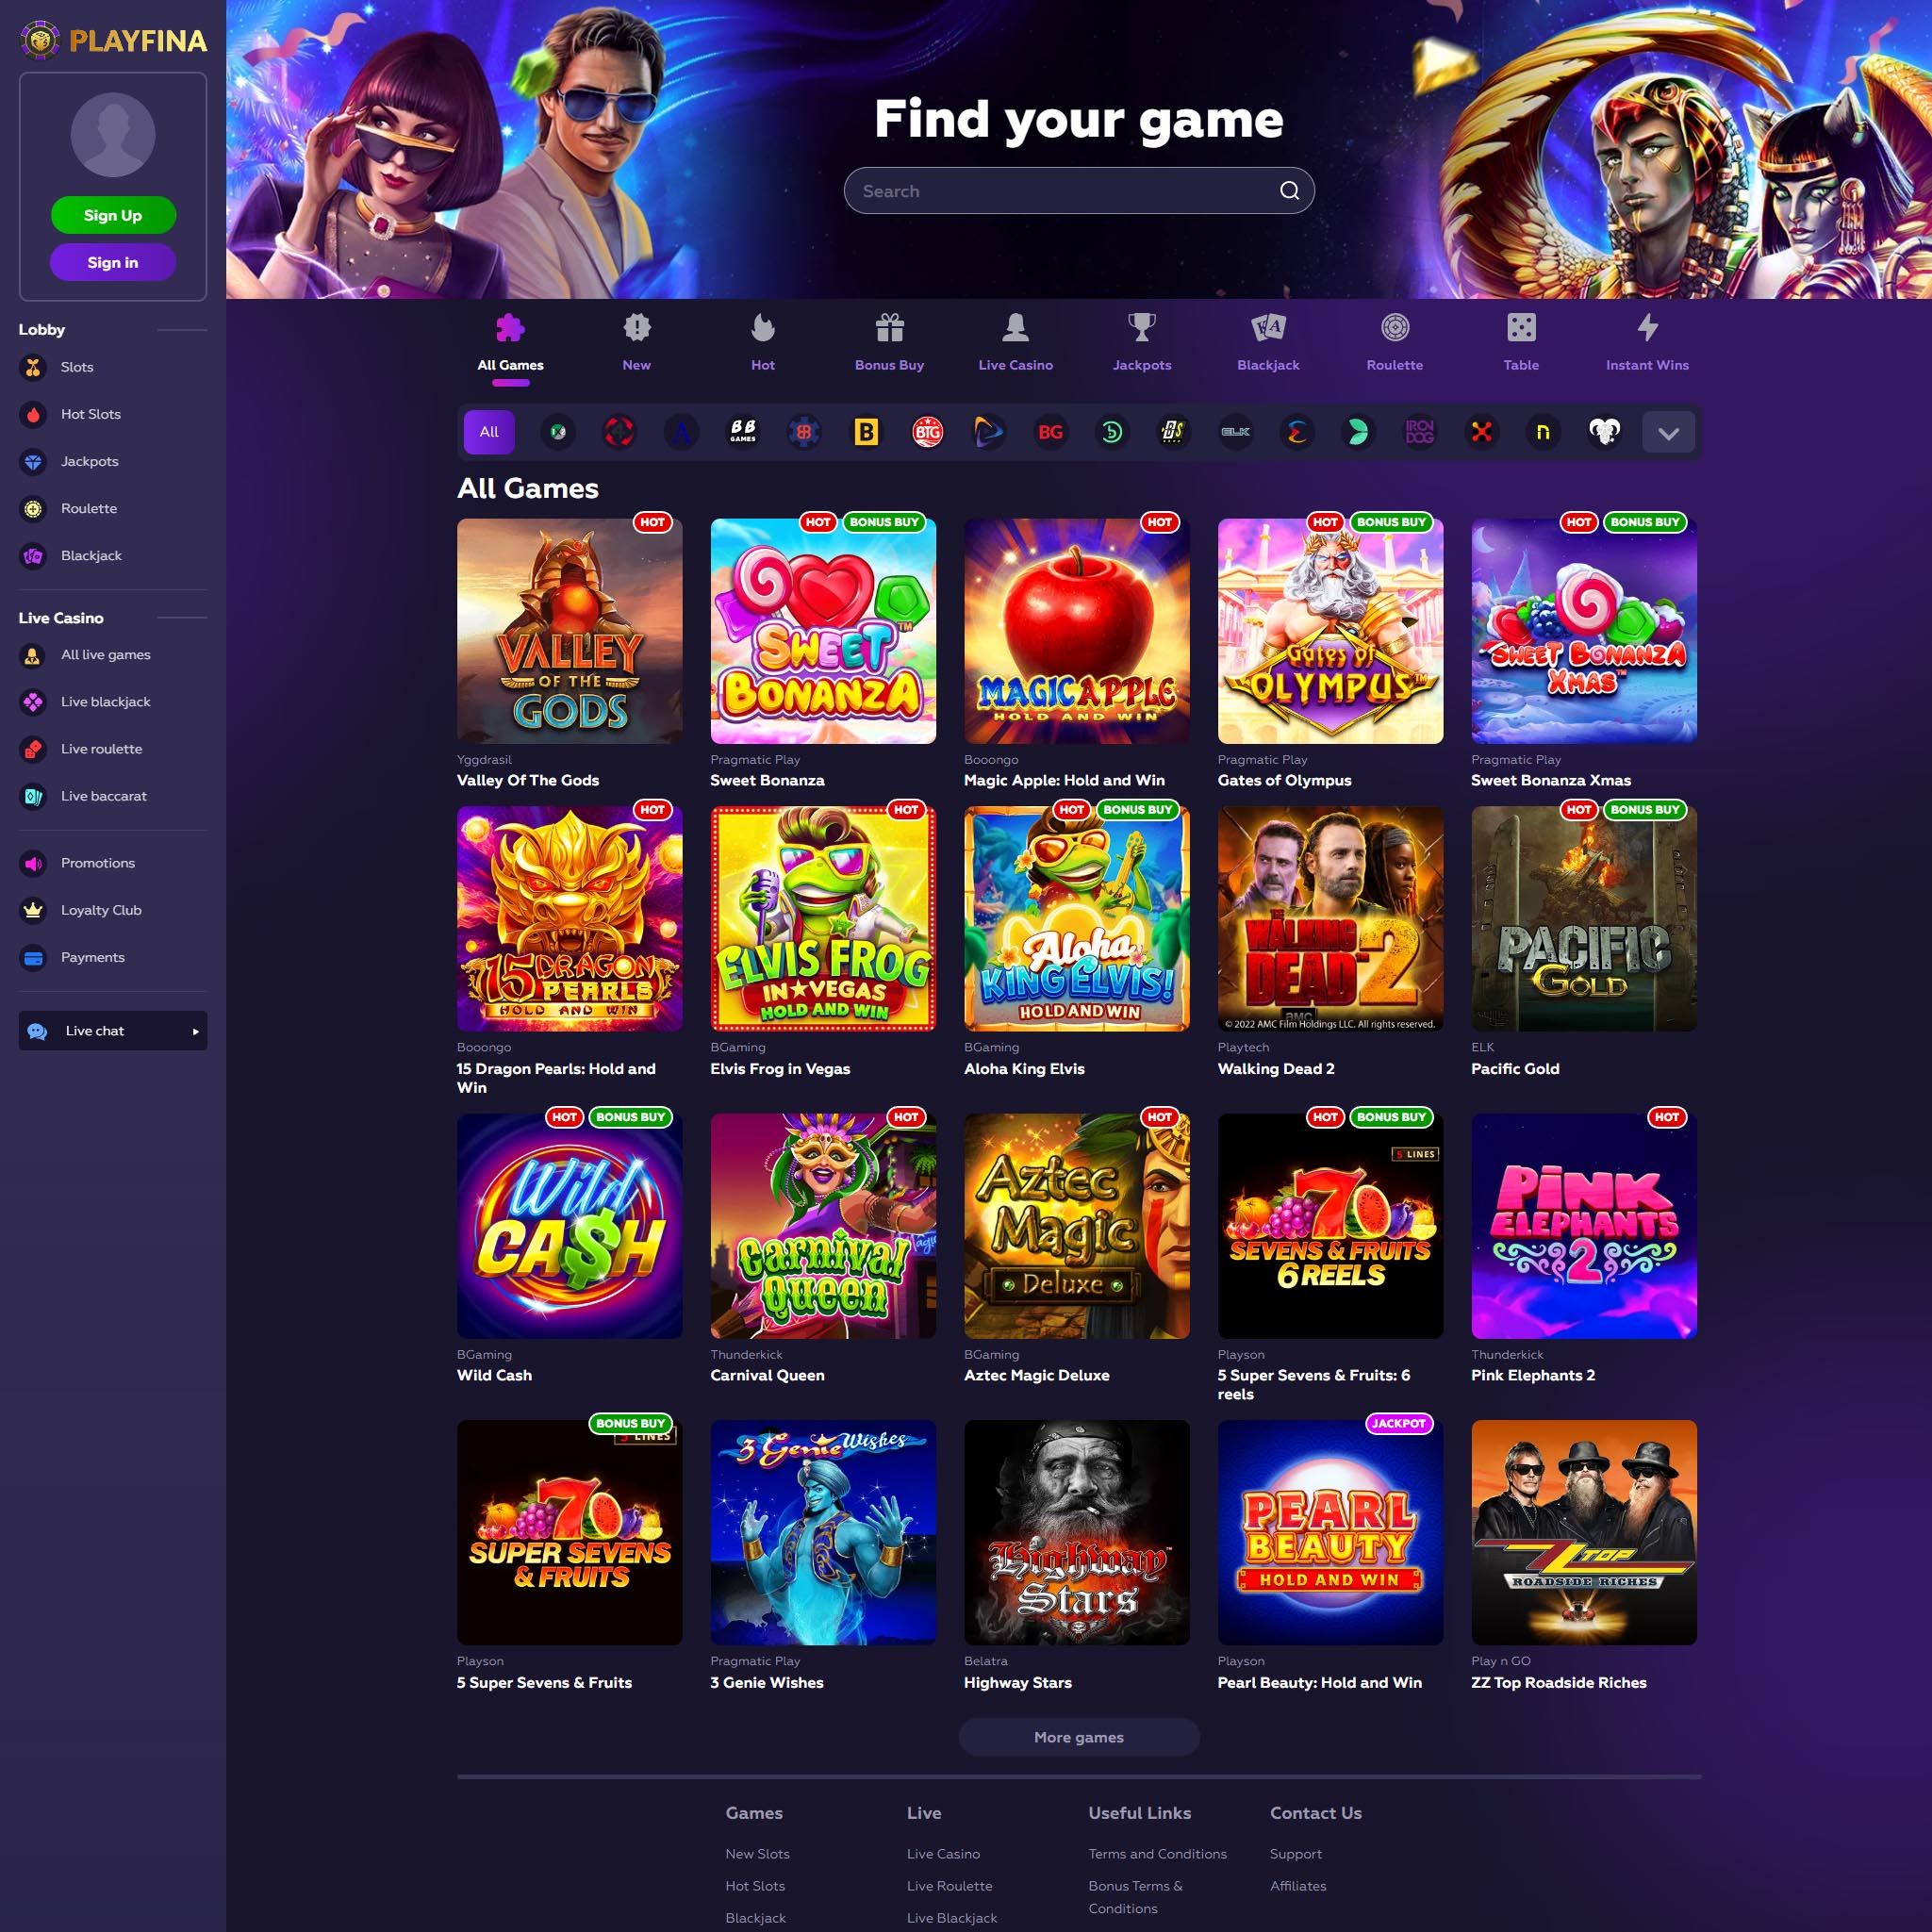 Playfina Casino full games catalogue